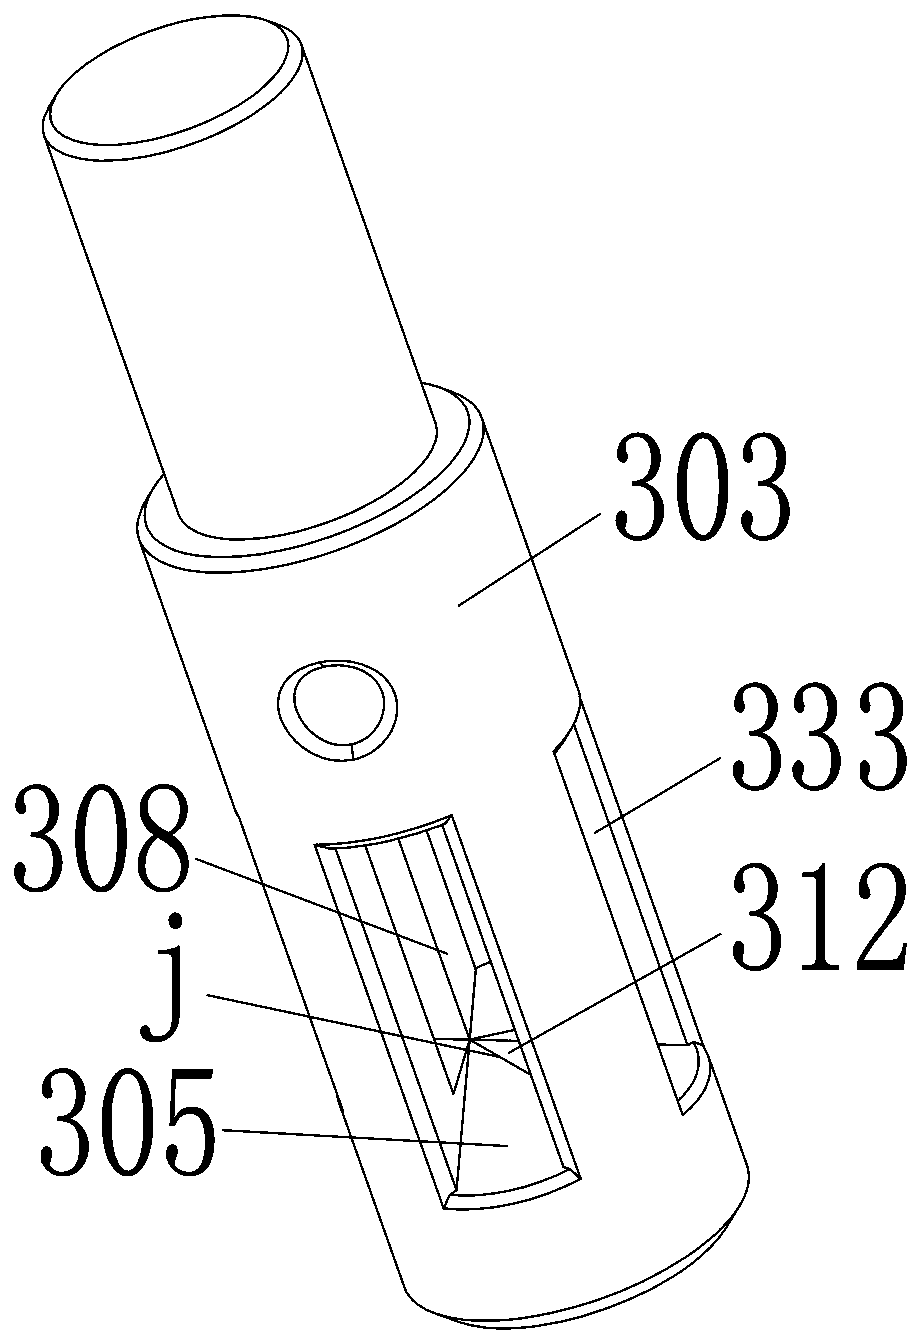 Manual flip fixture